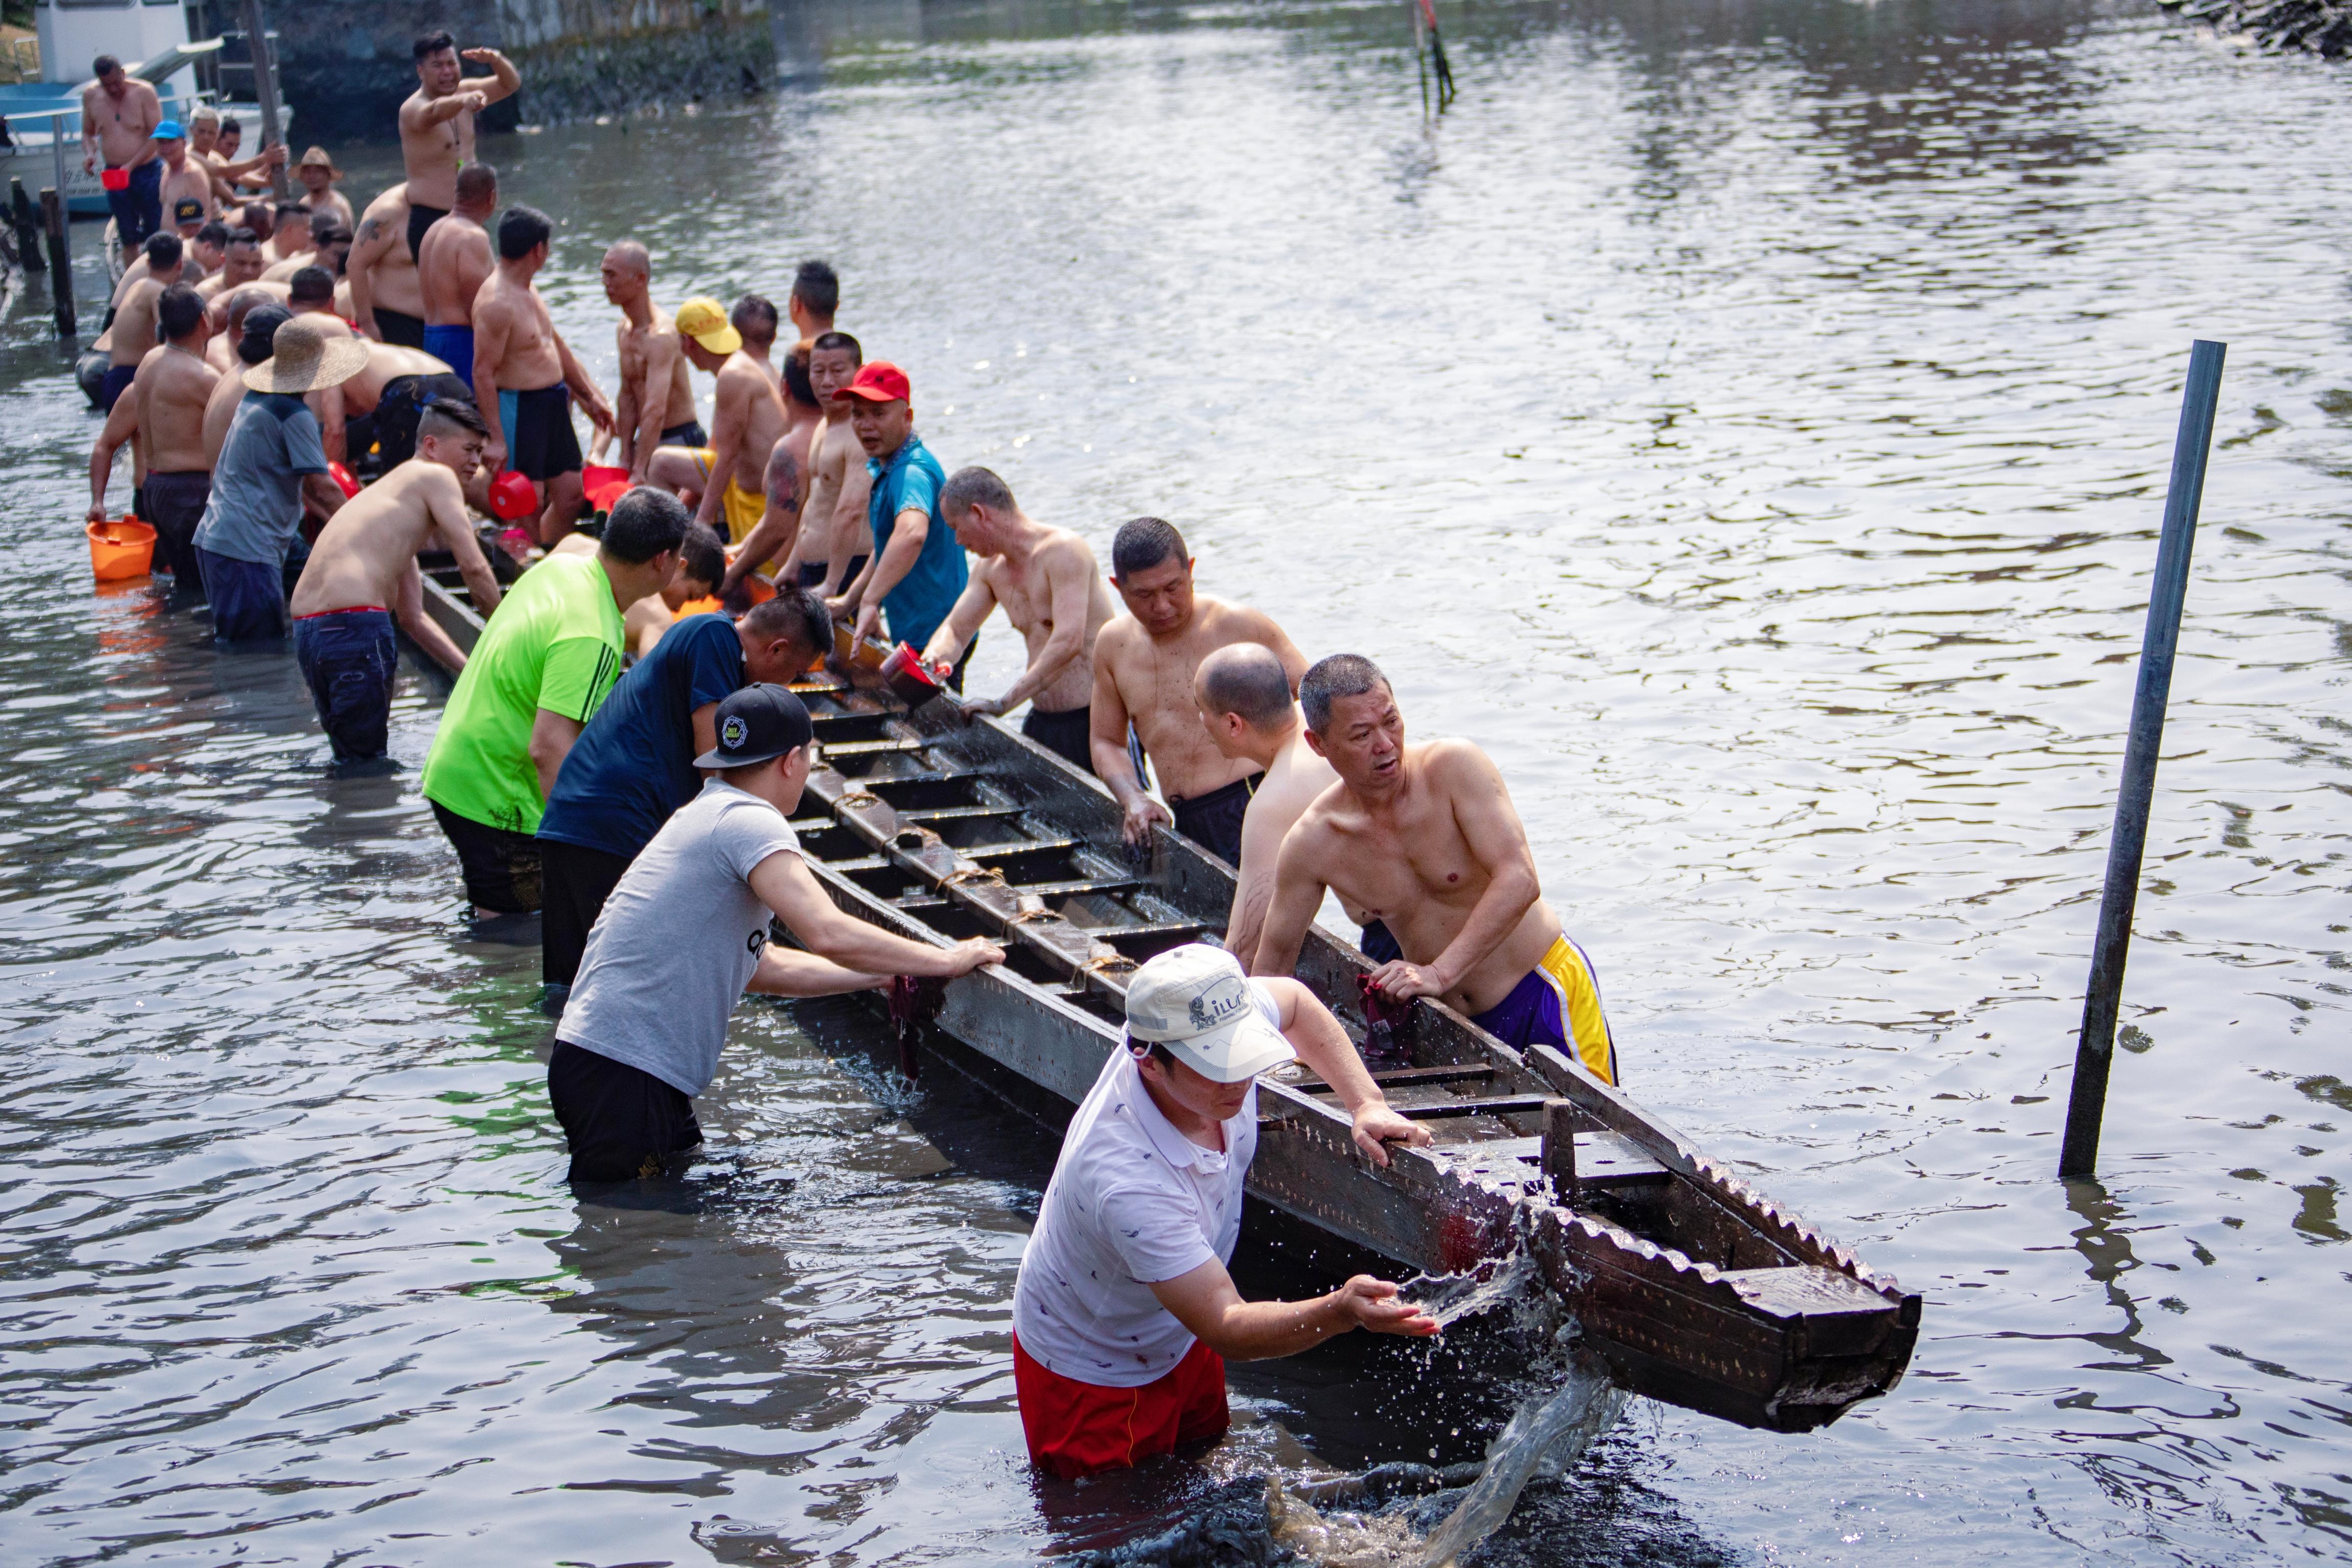 广州白云鸦岗村的这条传统龙舟时隔三年又完成“起龙”仪式。石建华 摄